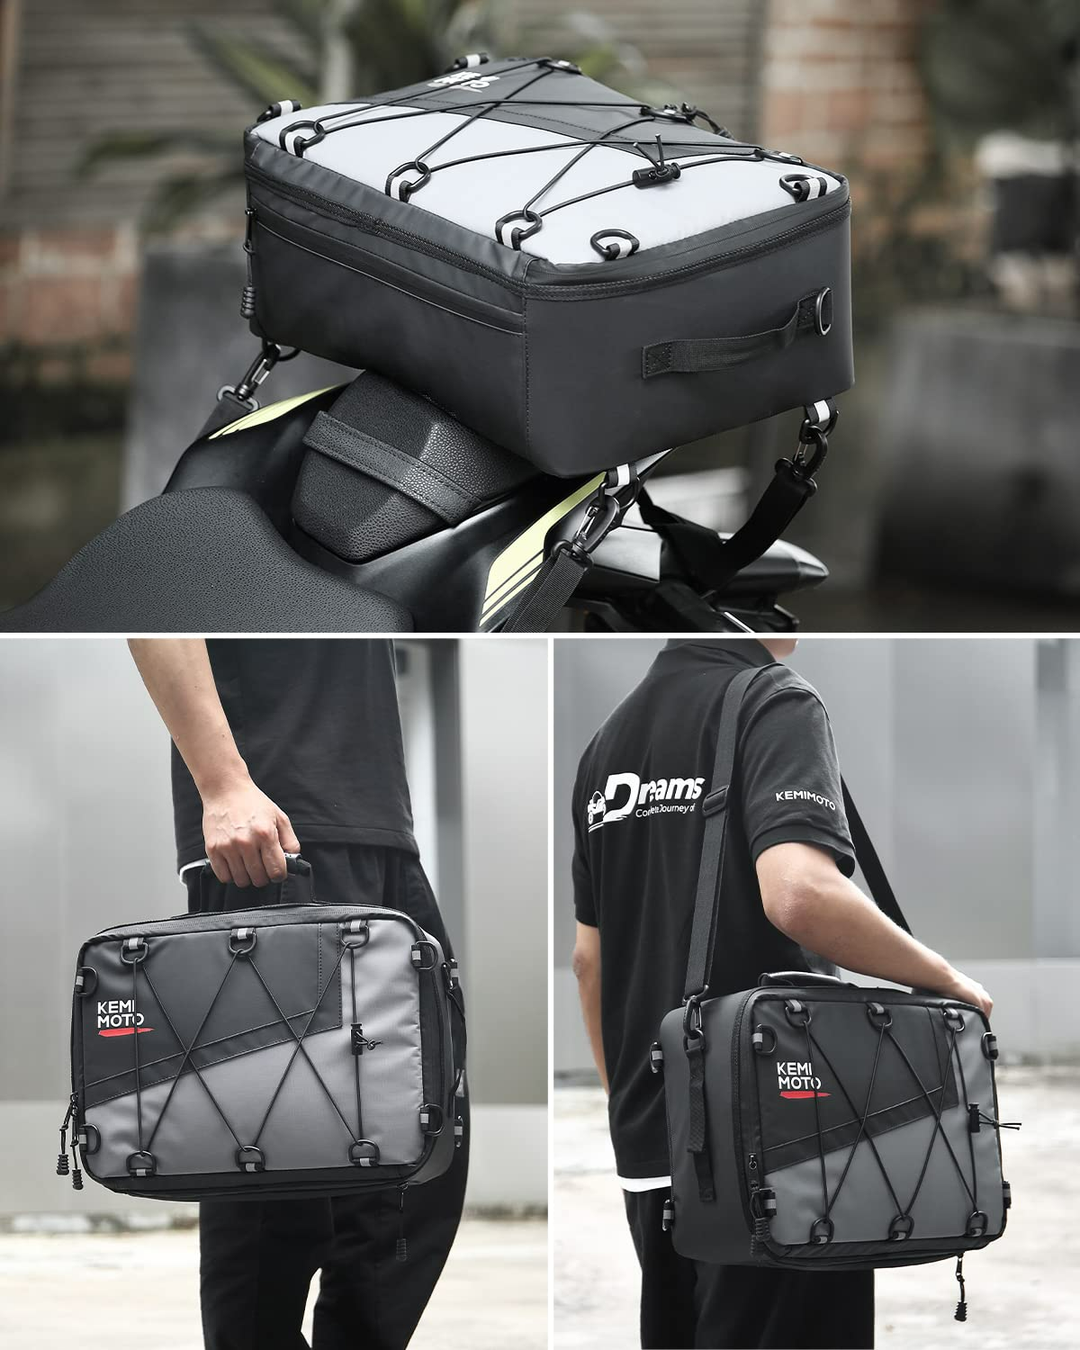 Motorcycle Universal Cooler Tail Bag 16L - Kemimoto